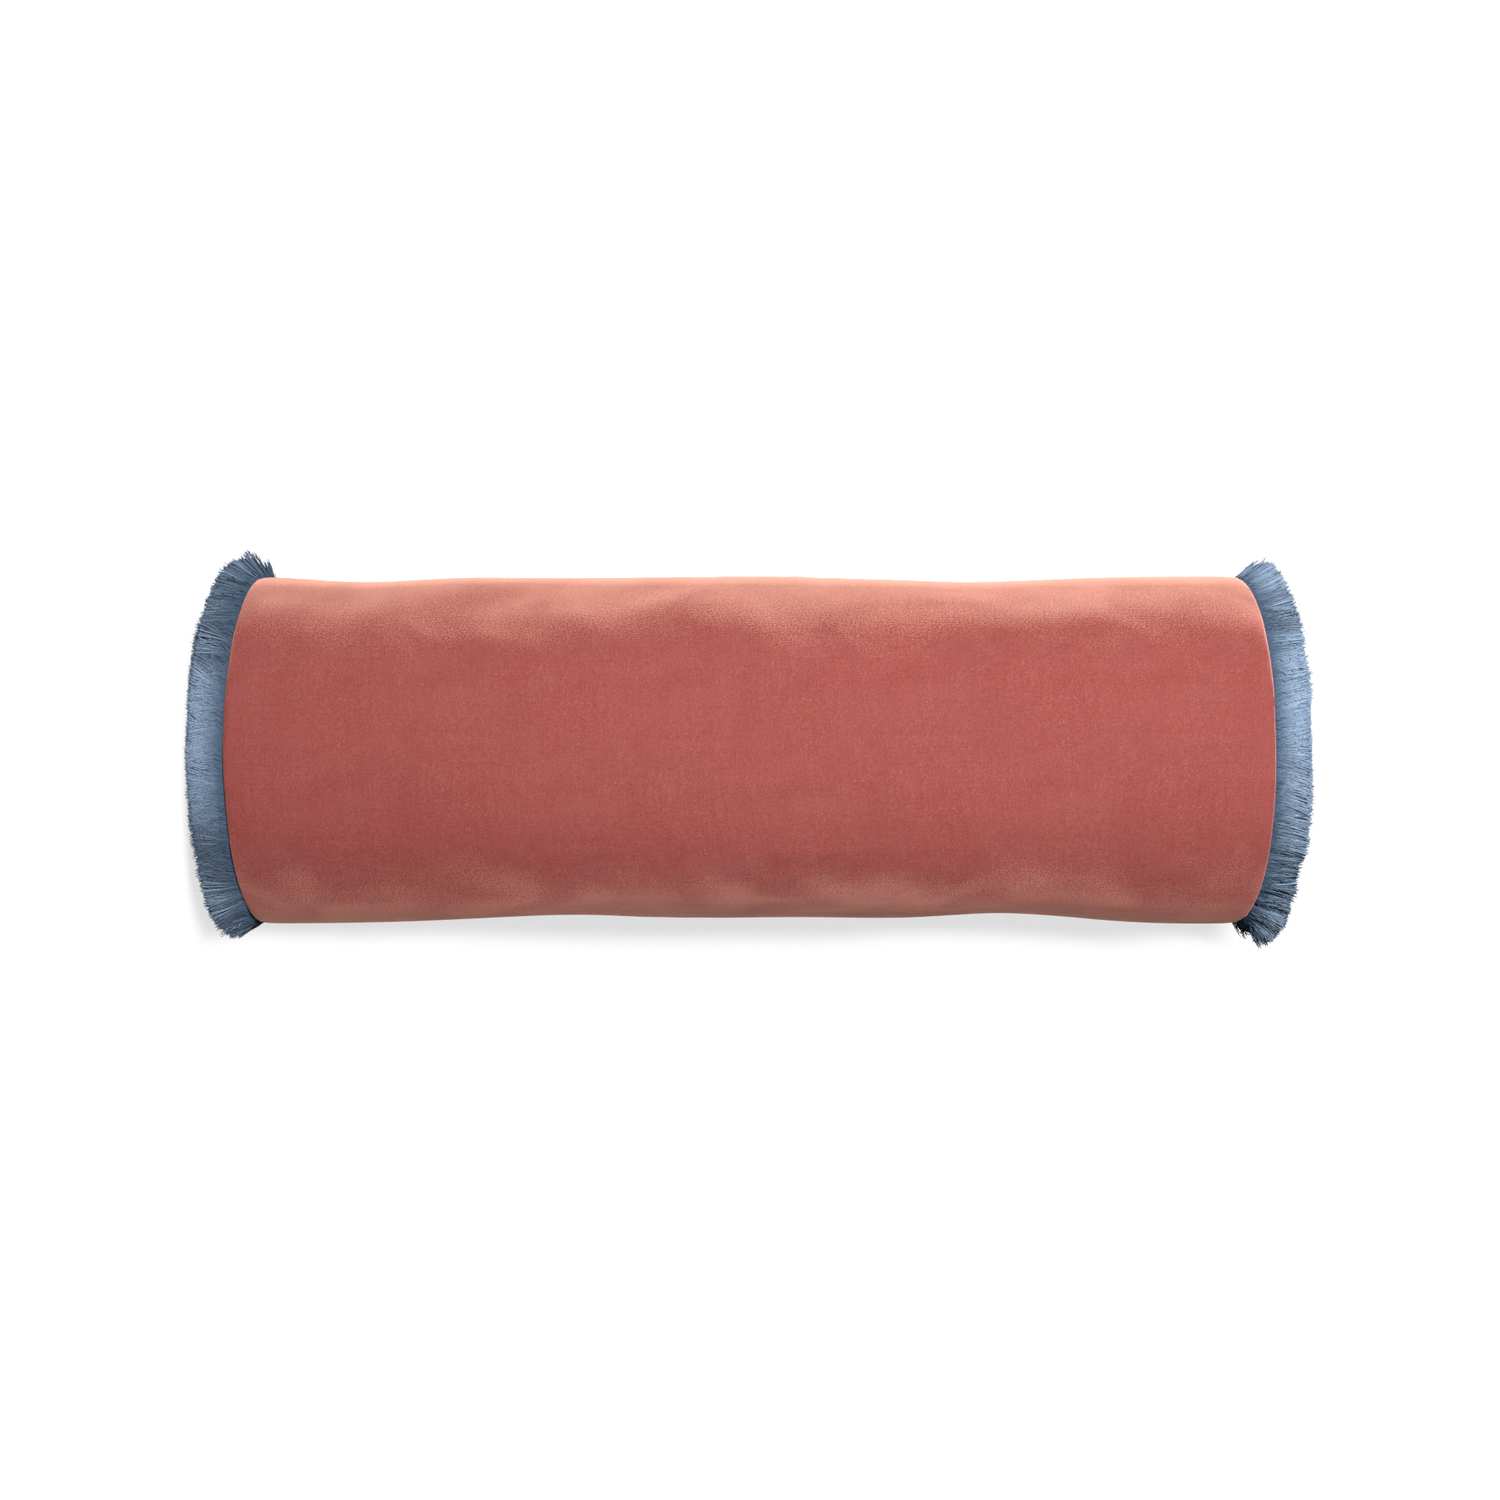 bolster coral velvet pillow with sky blue fringe